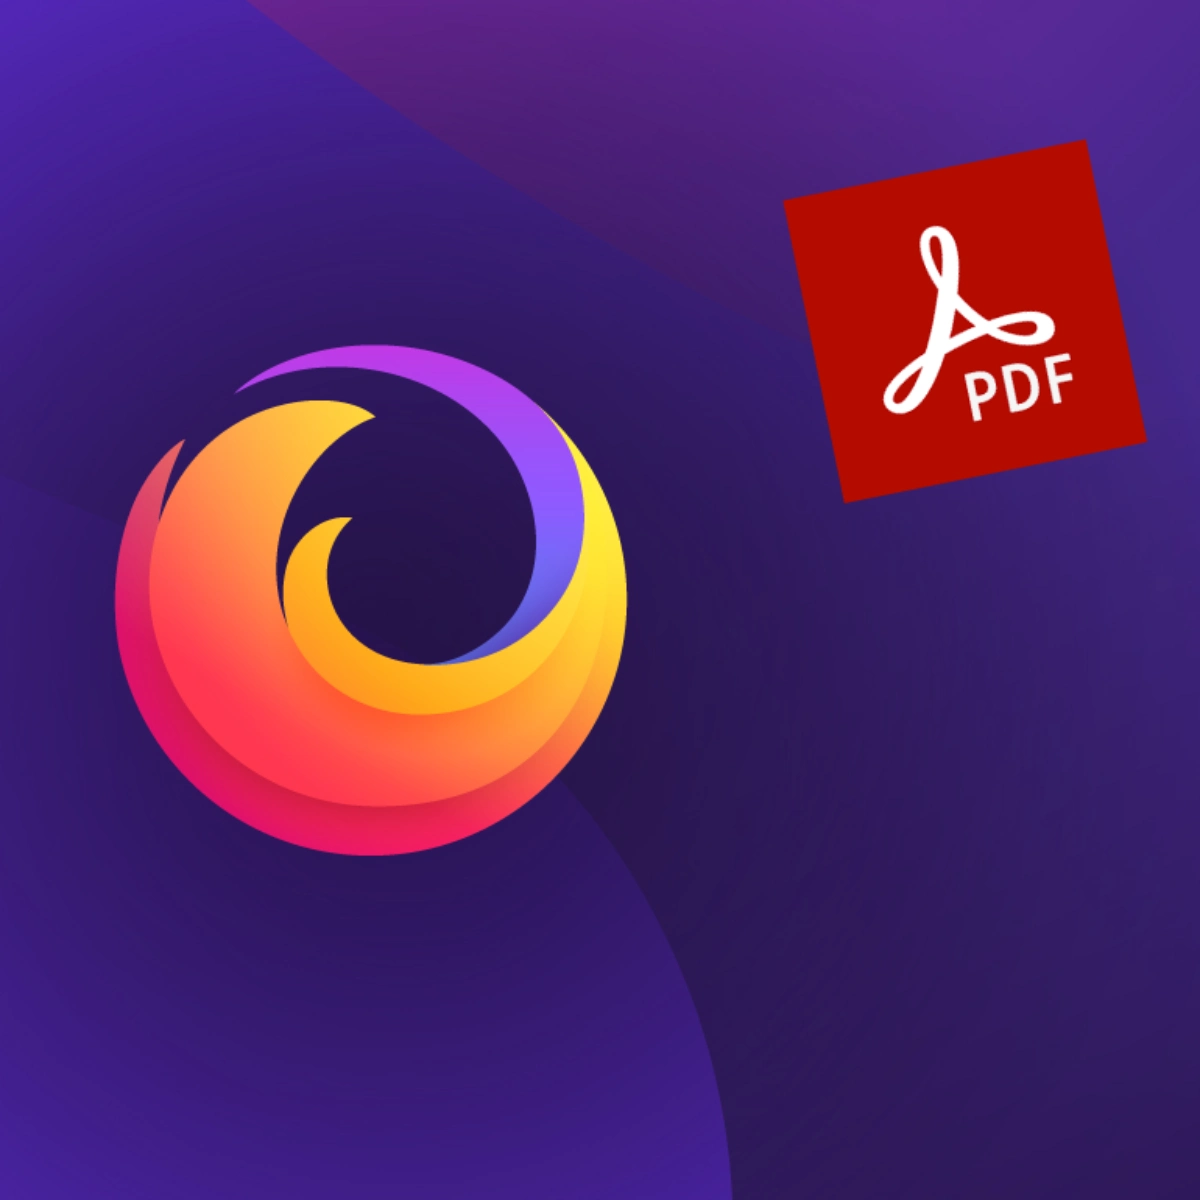 Version 106 of Firefox brings in PDF edit option